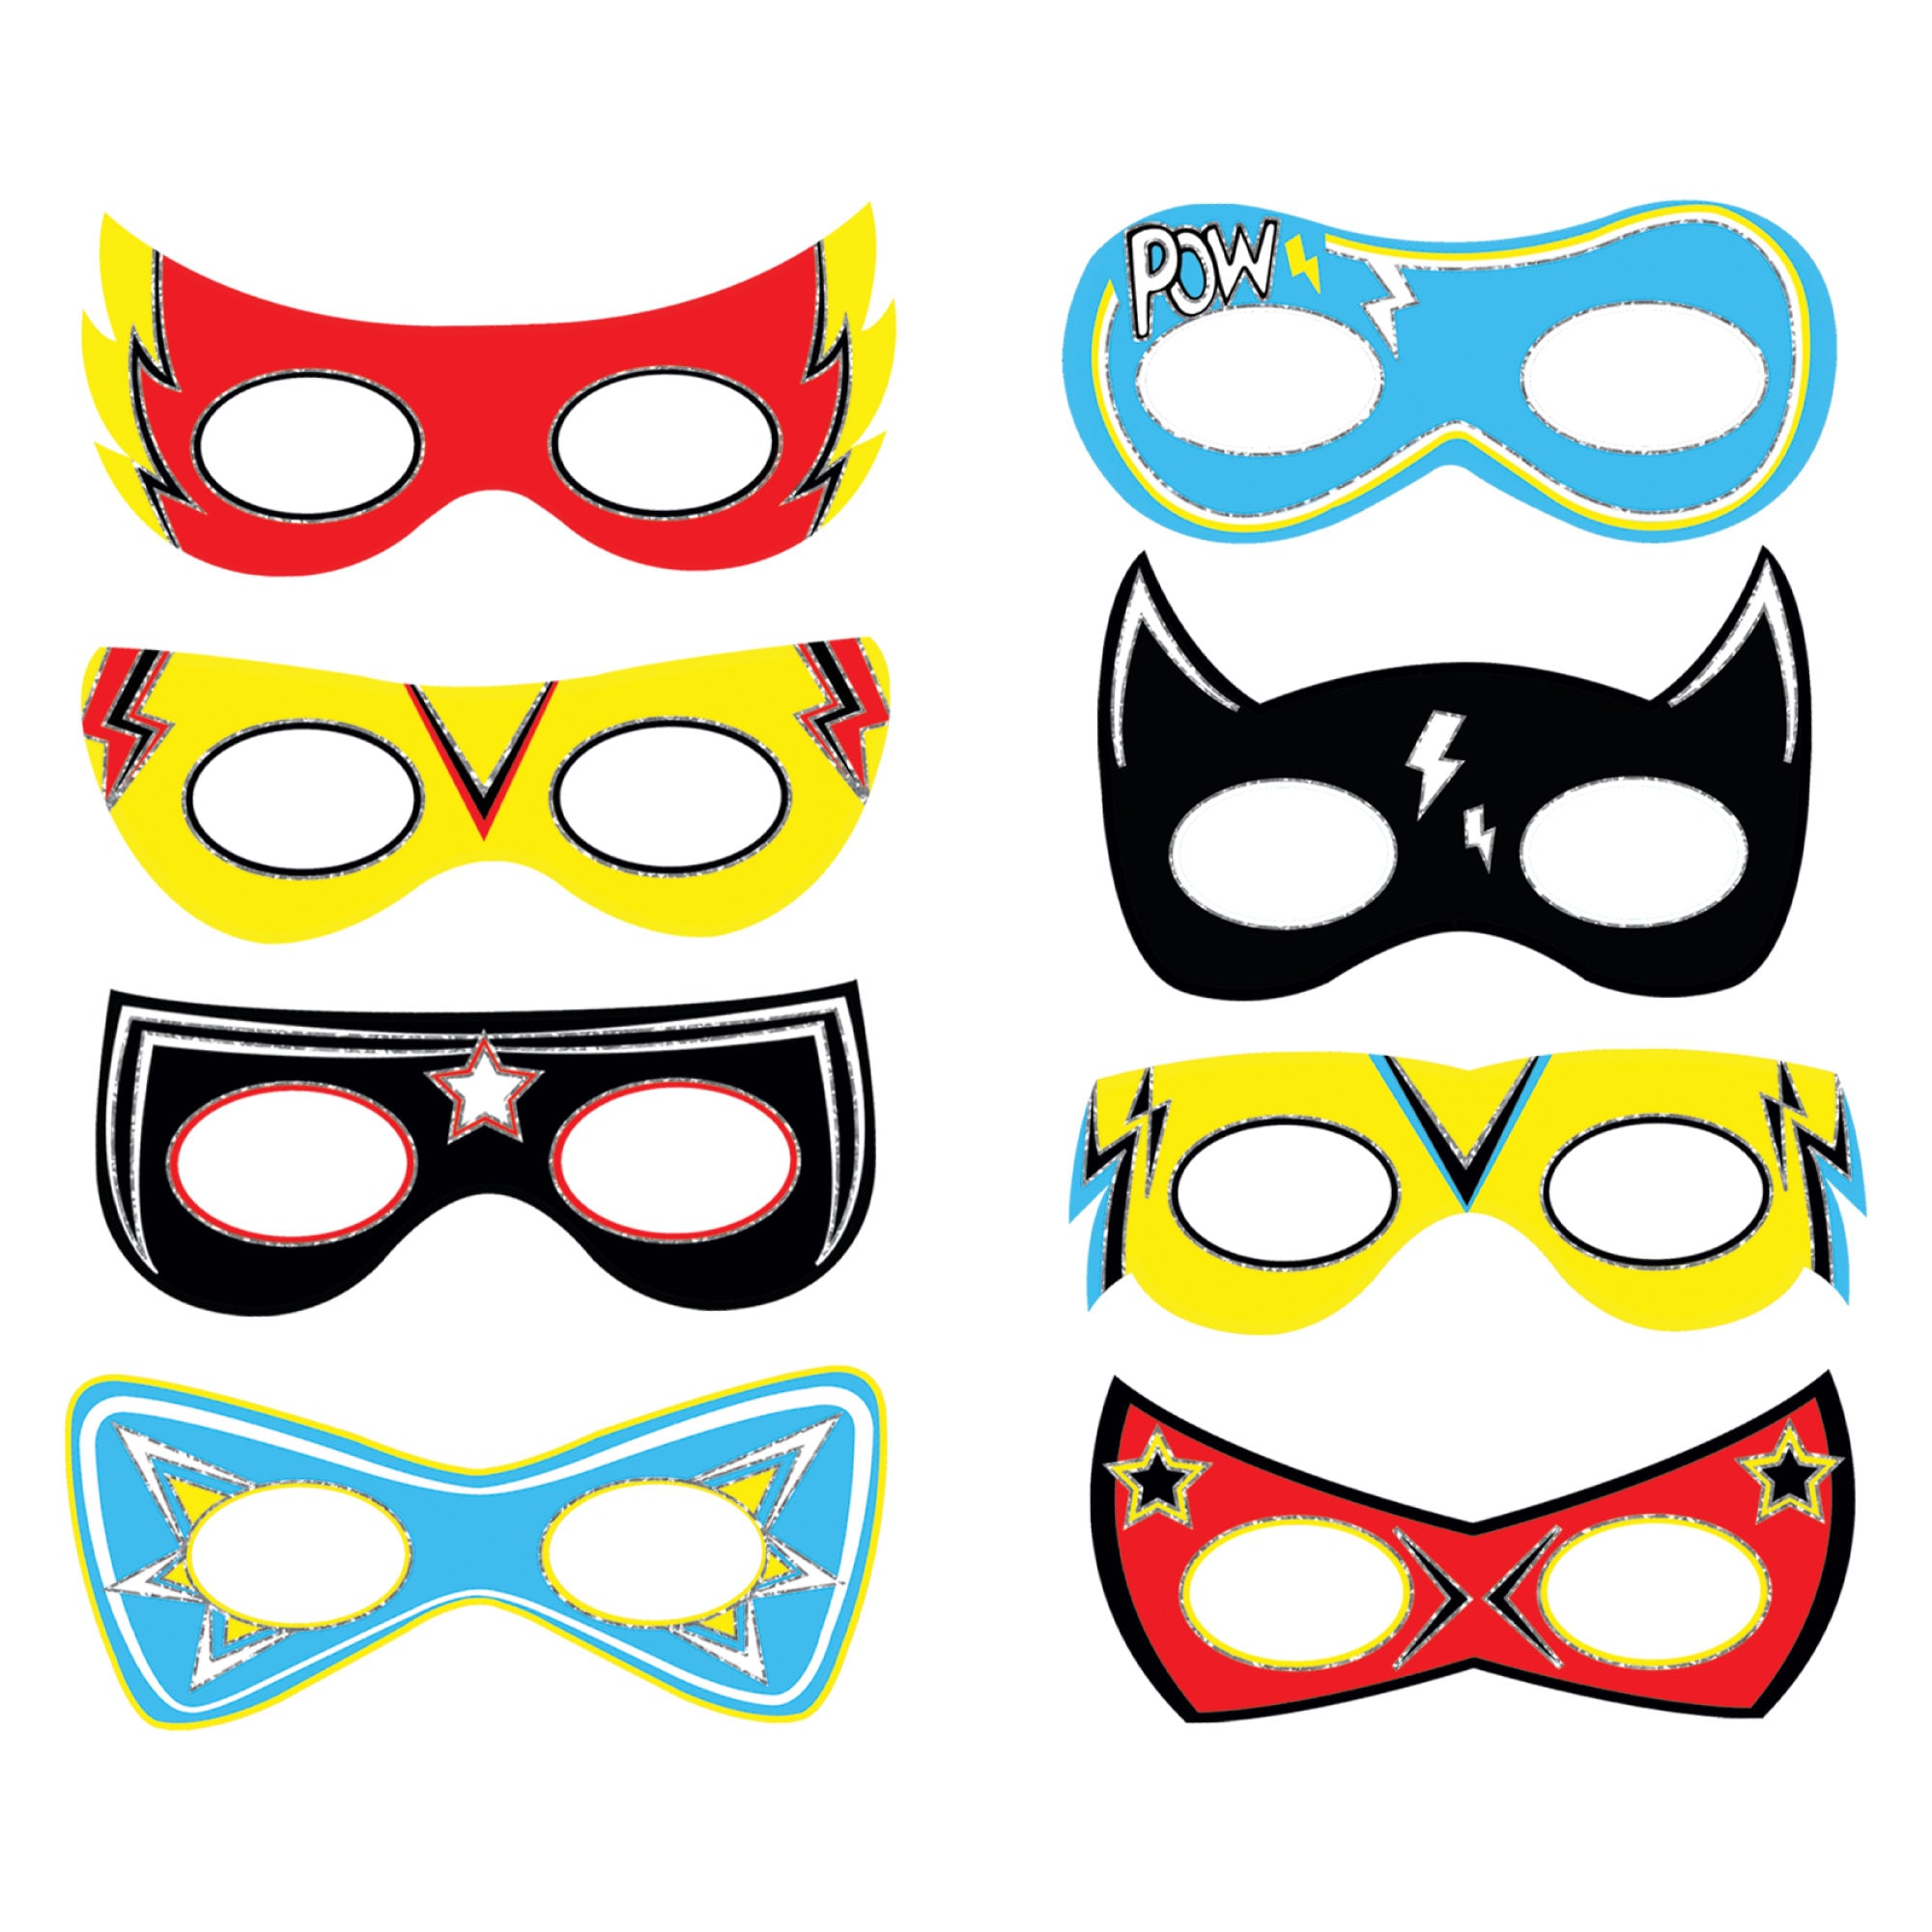 Adjustable Sizes Superhero Masks for Kids Party 26Pcs Superhero Masks Superhero Party Supplies,Superhero Party Favors for Kids Birthday 